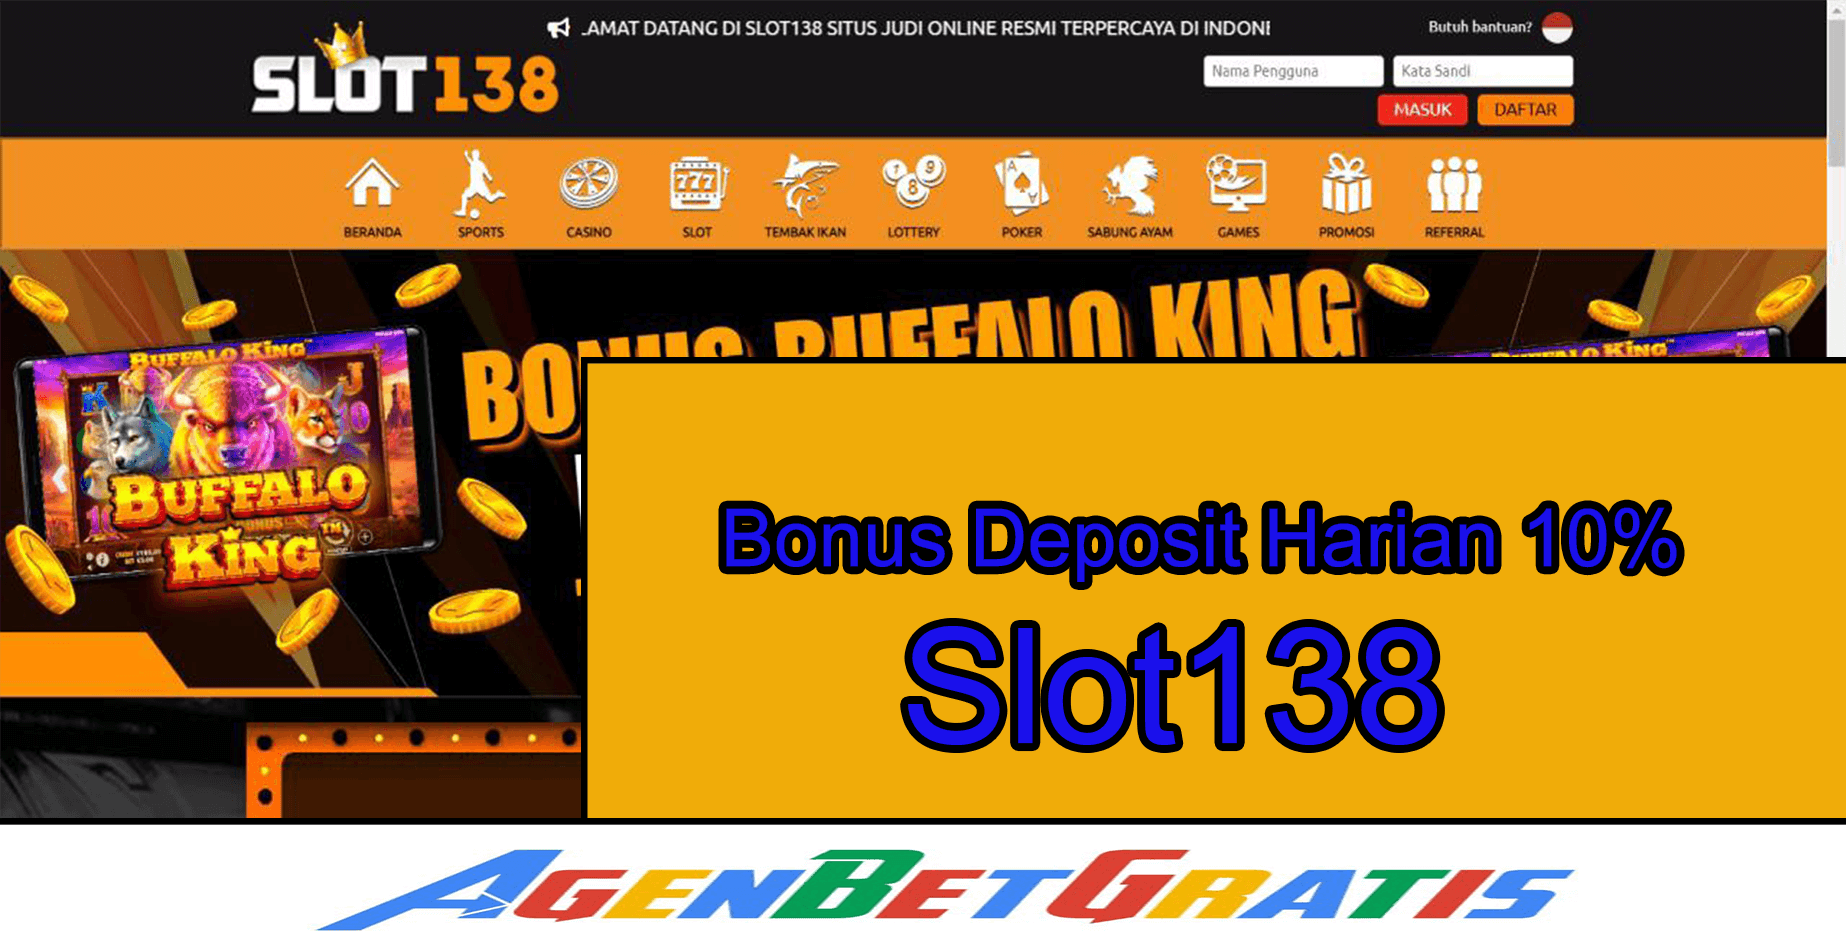 SLOT138 - Bonus Deposit Harian 10%